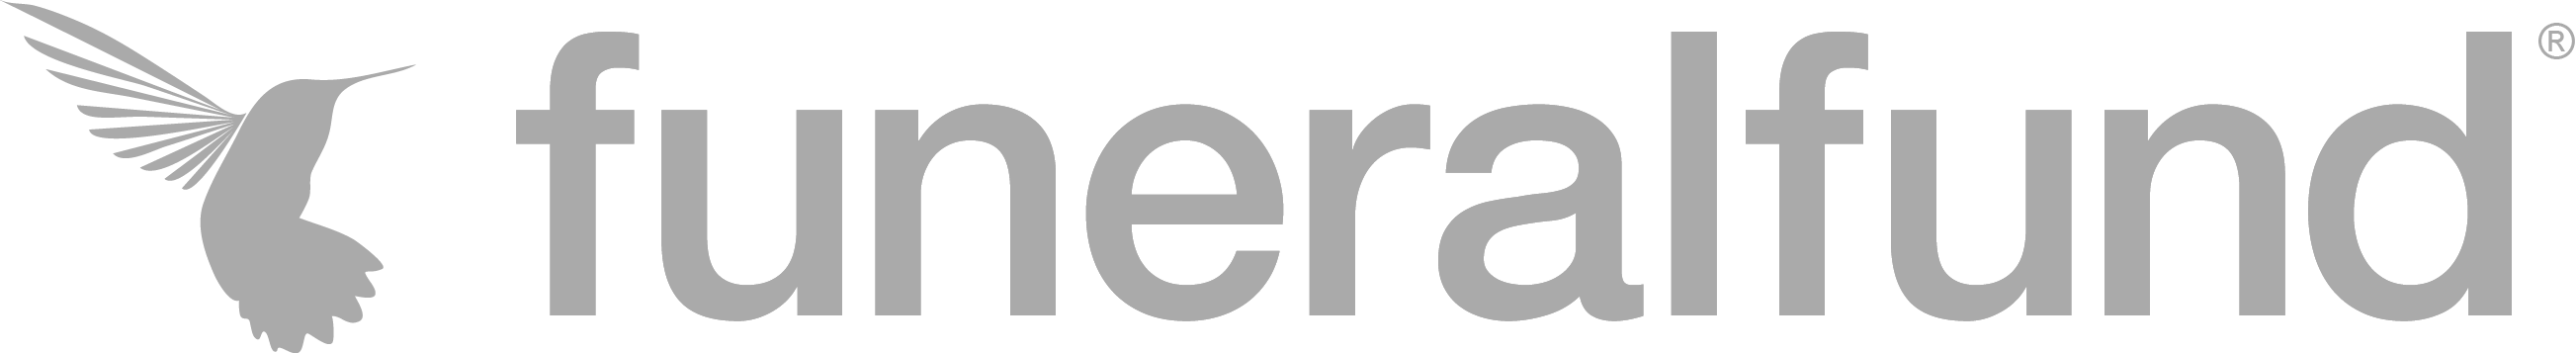 funeralfund logo